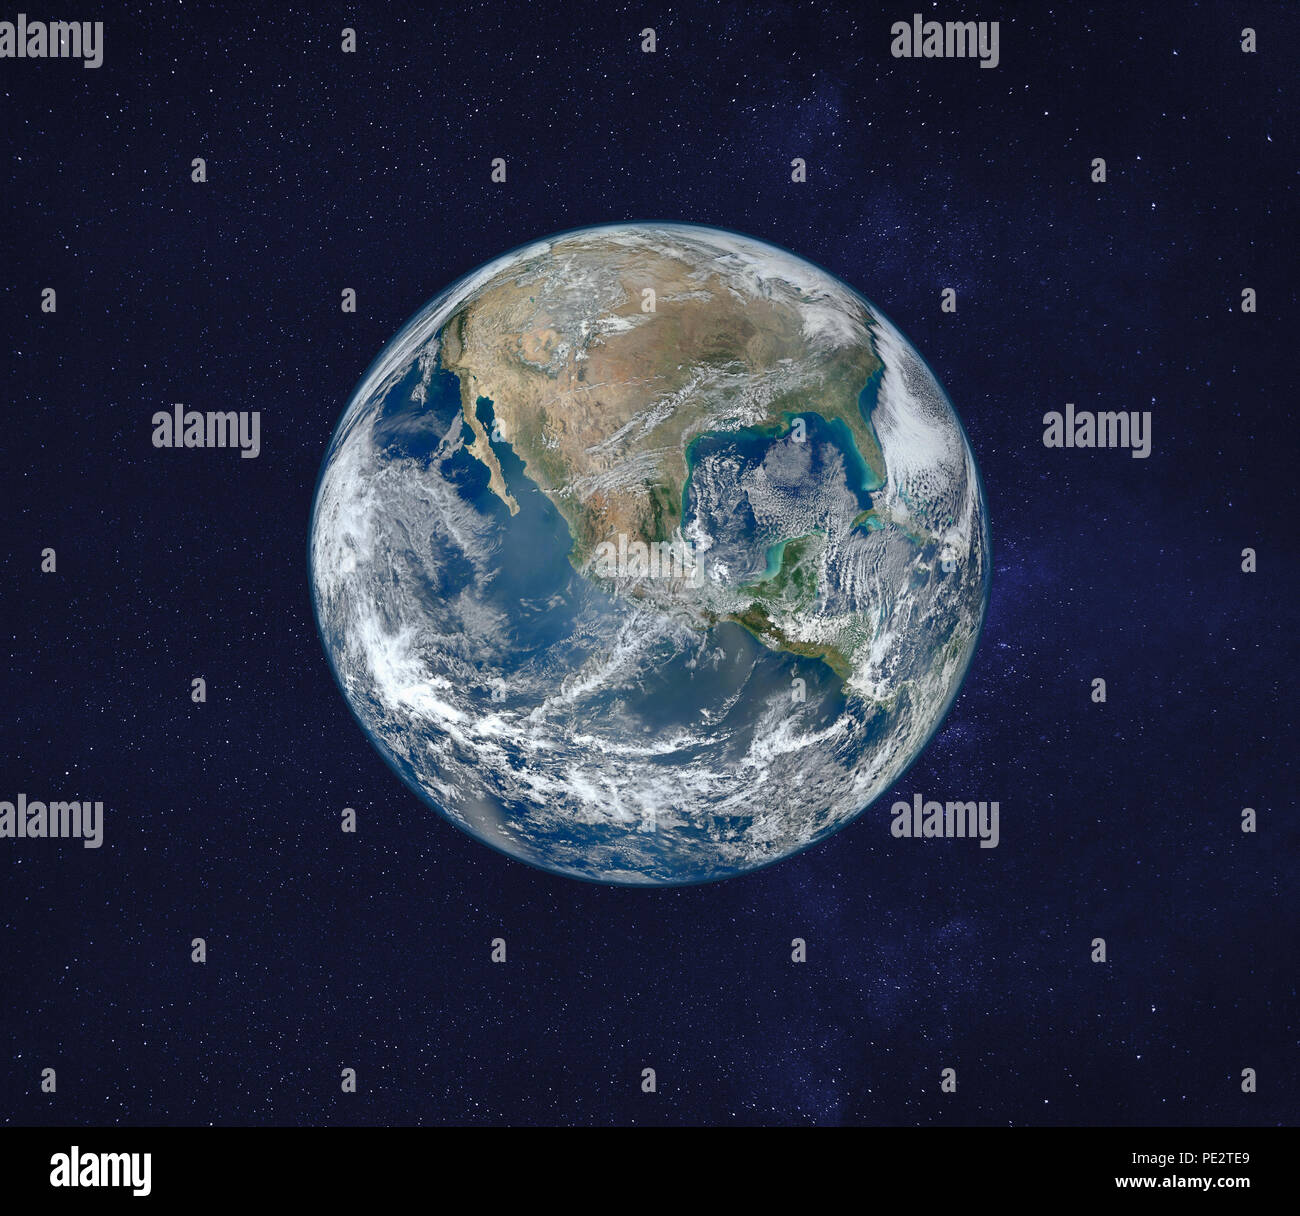 Vista del planeta Tierra desde el espacio, la imagen original proporcionado por la NASA. Foto de stock